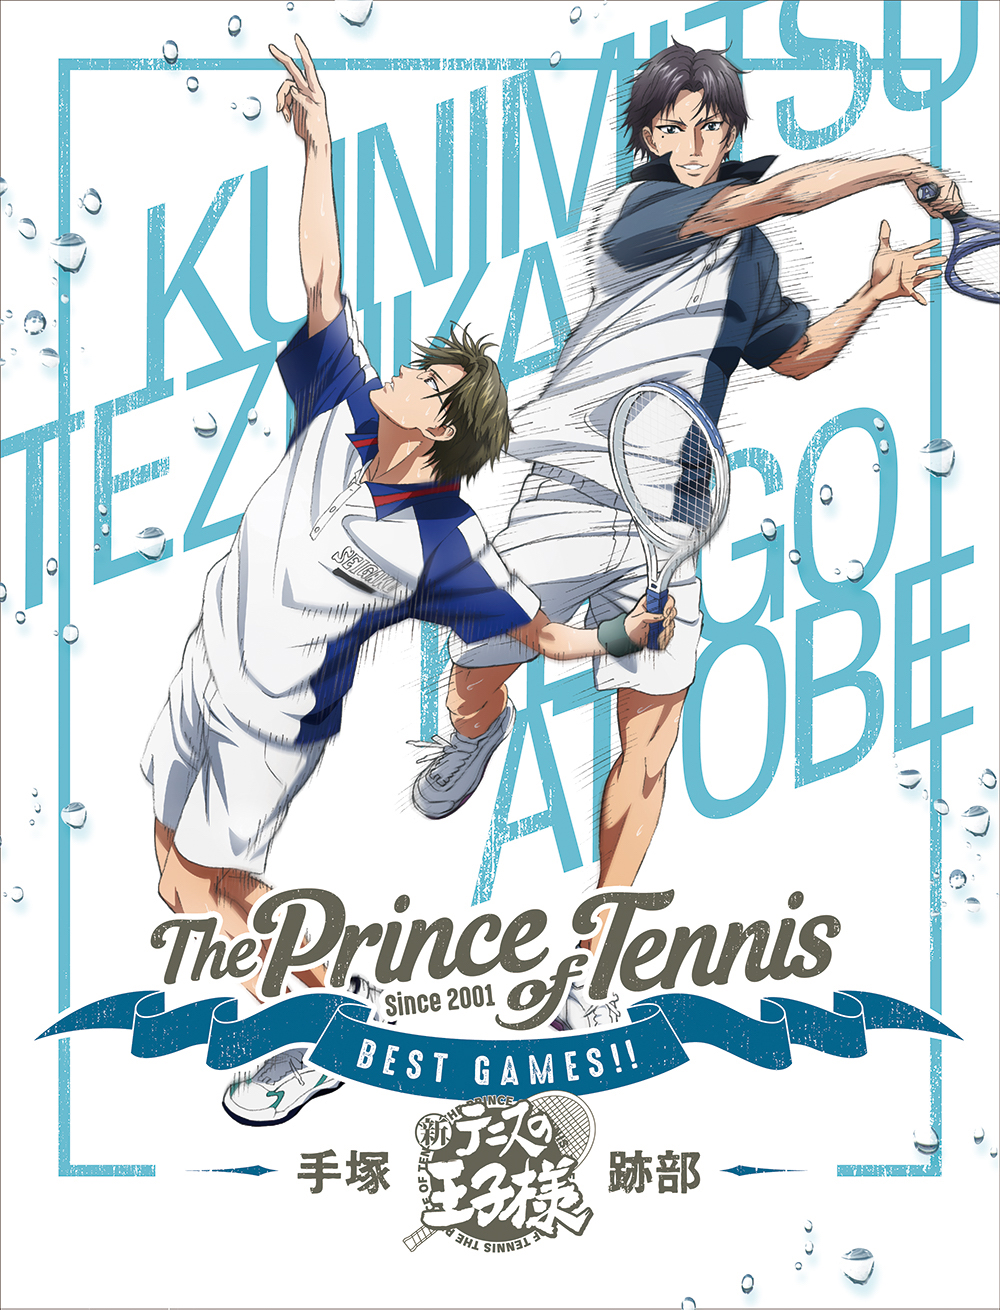 ロックバイオリニストAyasaが新作OVA「テニスの王子様 BEST GAMES!! 手塚 VS 跡部」主題曲を担当サムネイル画像!